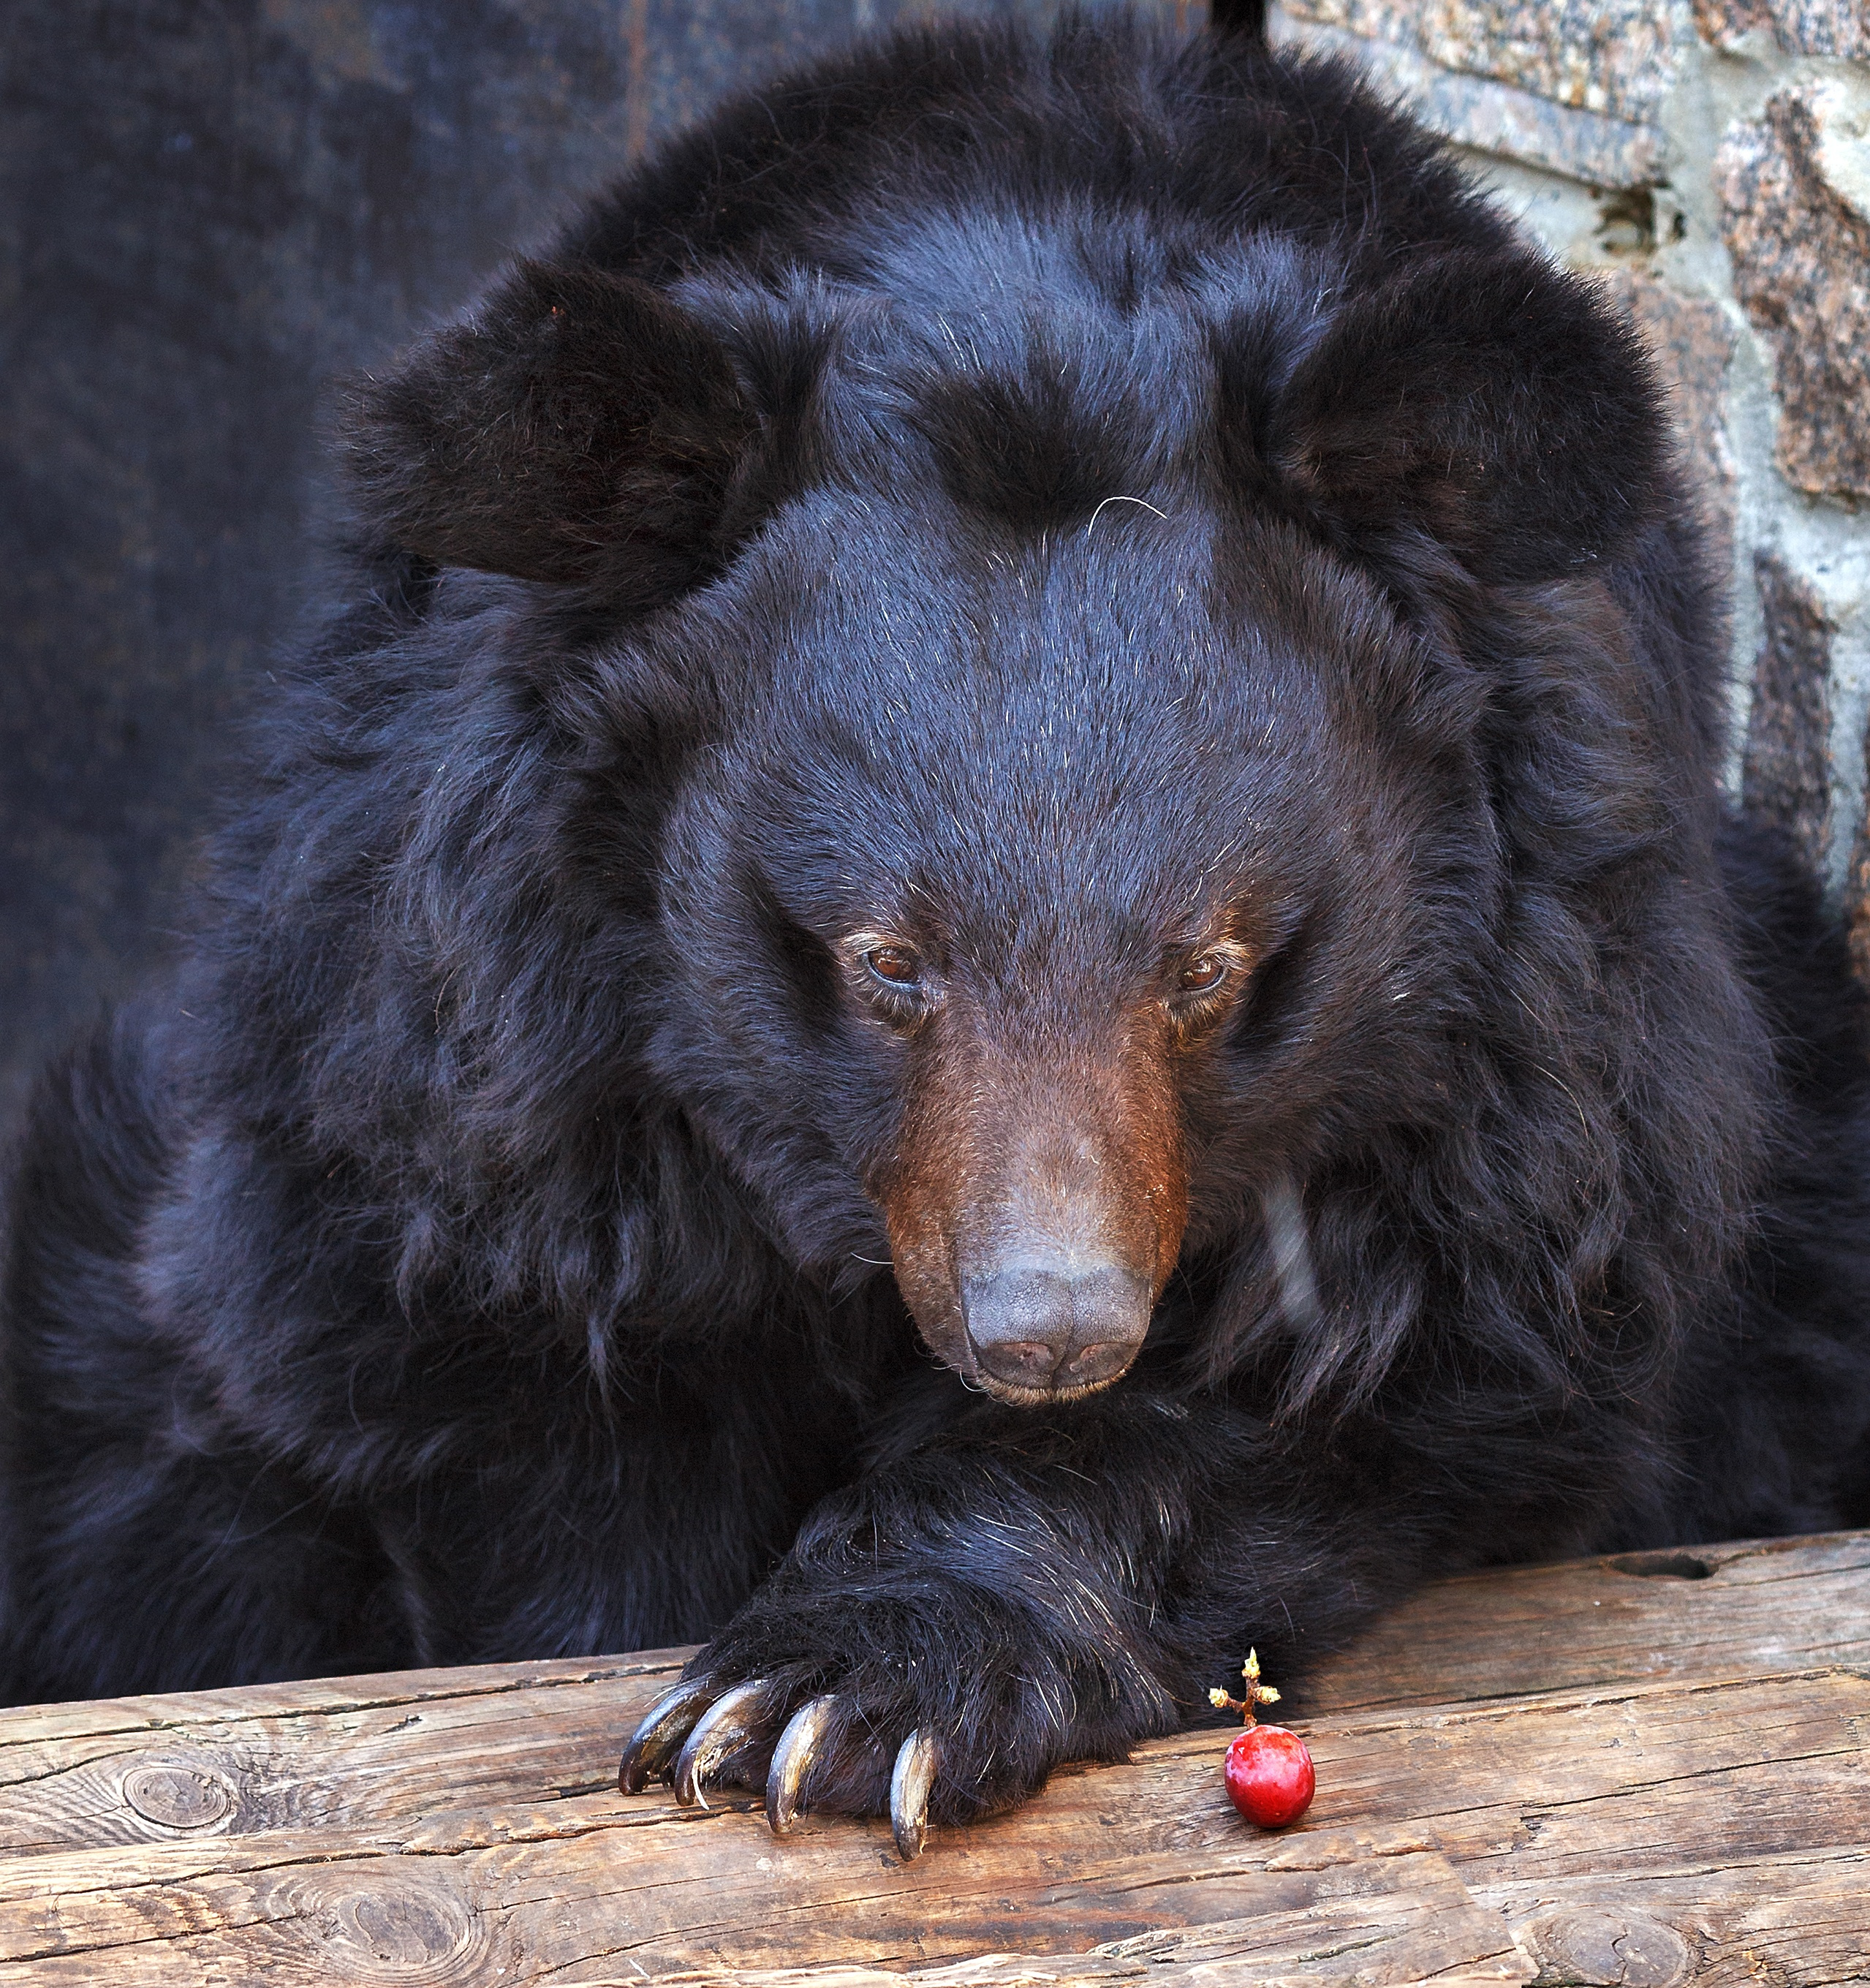 Гималайскому медведю Харитону, в отличие от своих сородичей, удалось выжить после отравления